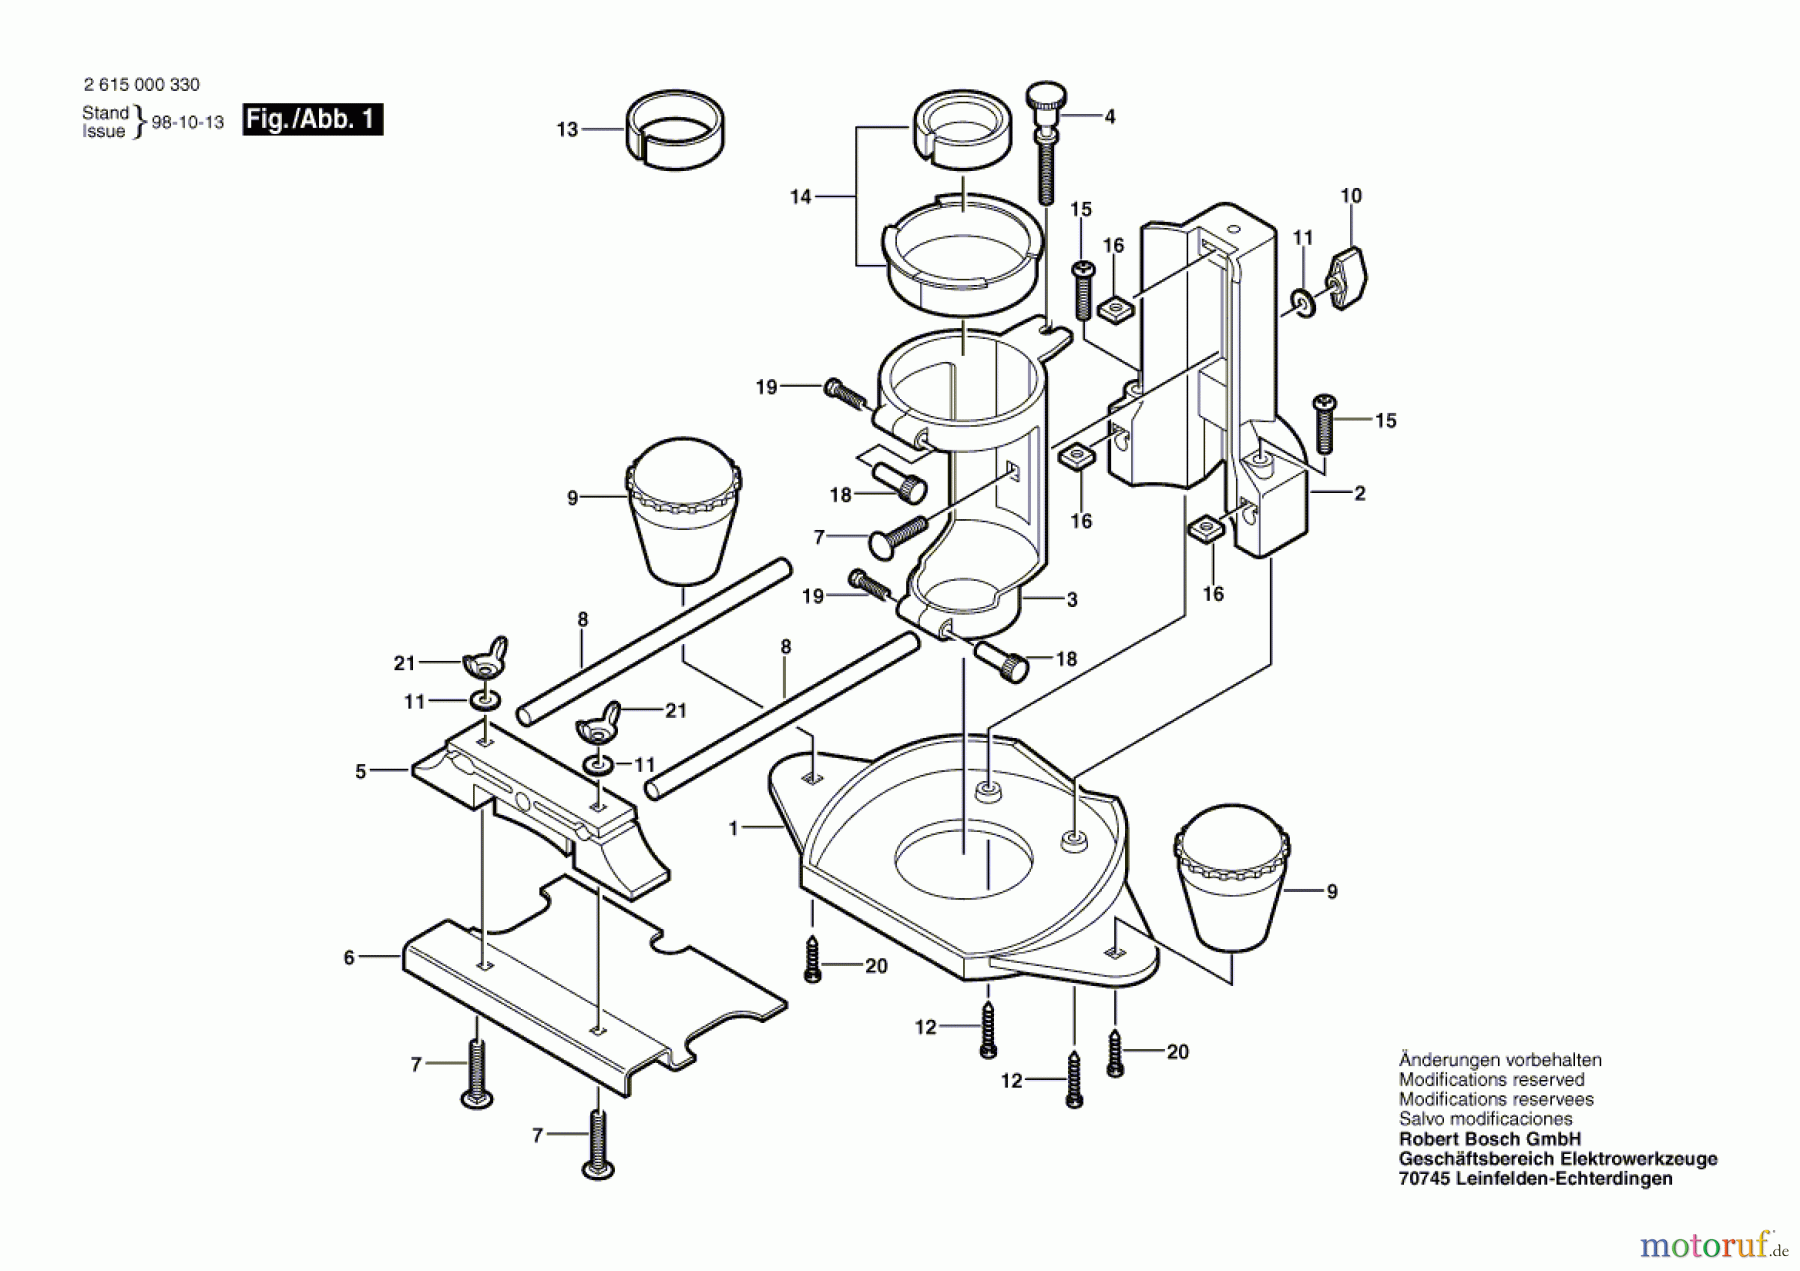  Bosch Werkzeug Fräsersatz 330-32 Seite 1